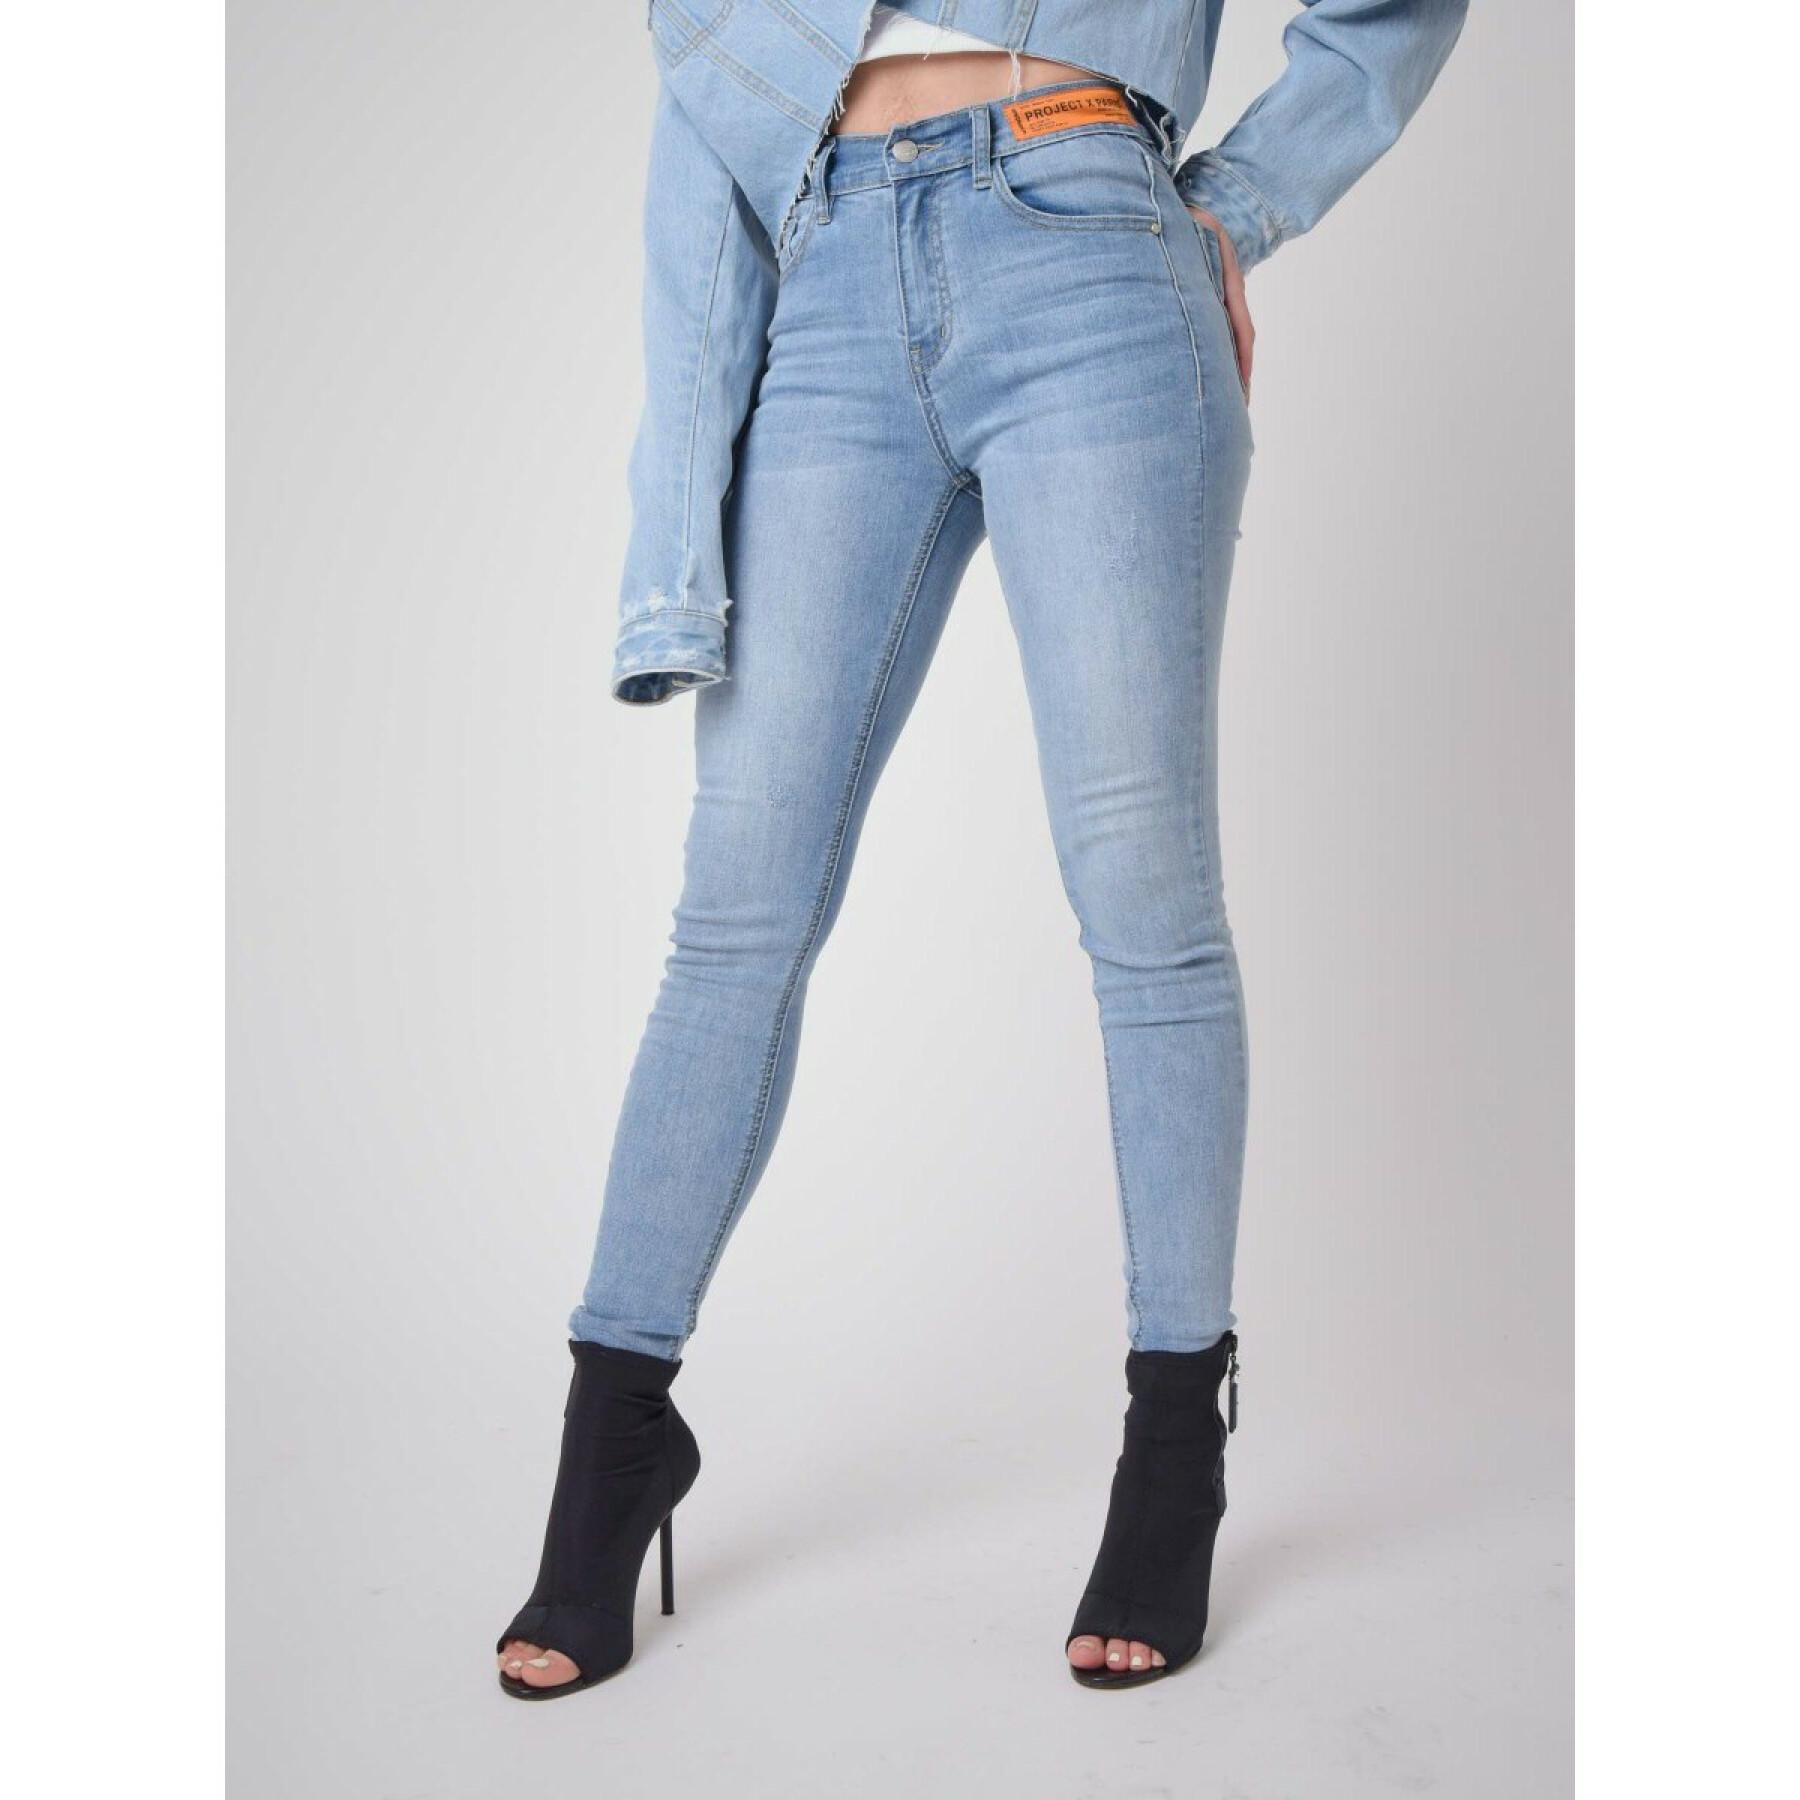 Jeans skinny fit logo étiquette femme Project X Paris